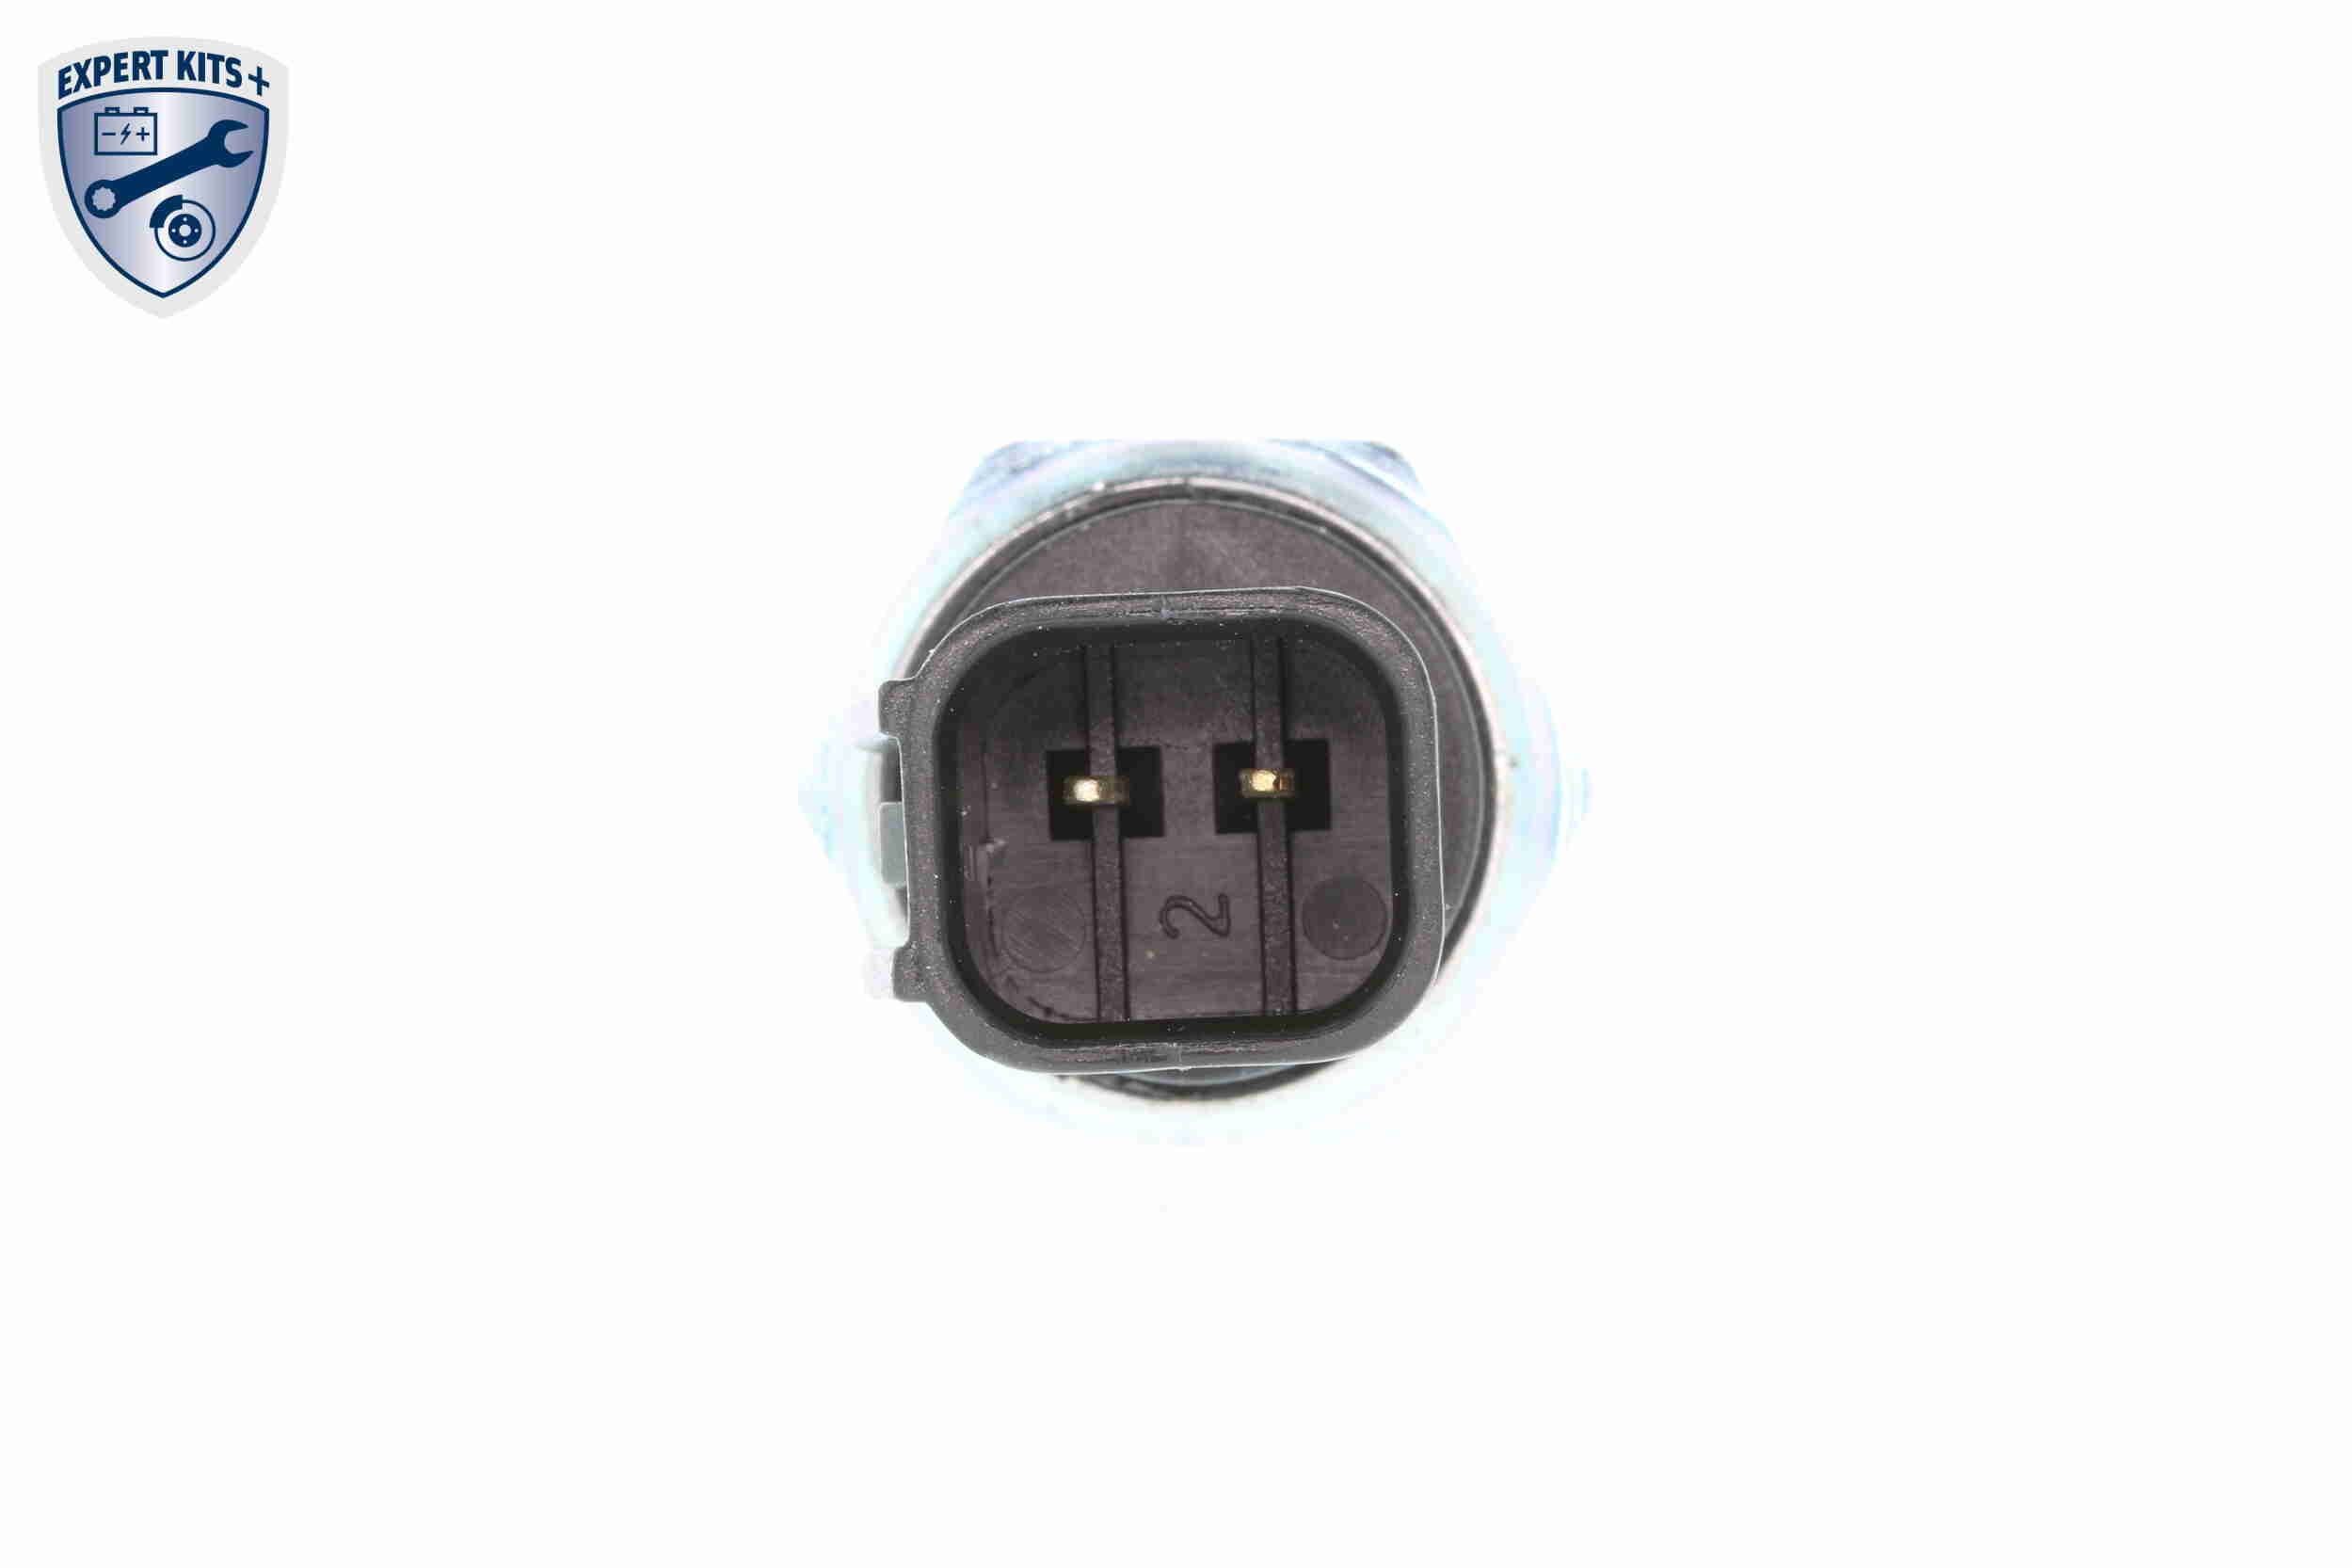 V25730033 Reverse light switch VEMO V25-73-0033 review and test